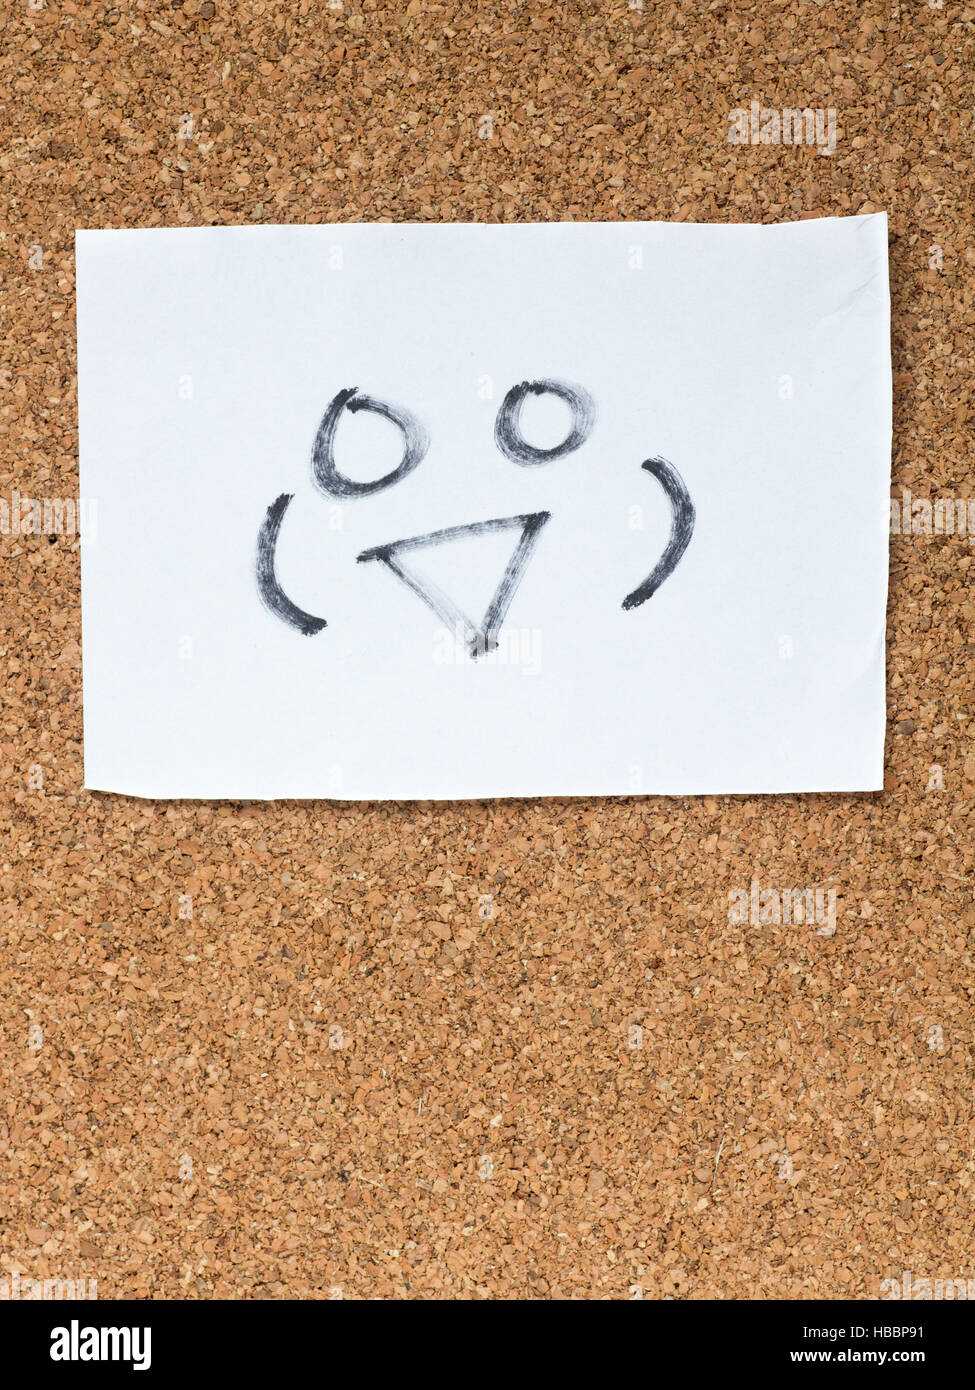 La série d'émoticônes japonais appelé Kaomoji sur le panneau de liège, smiling Banque D'Images